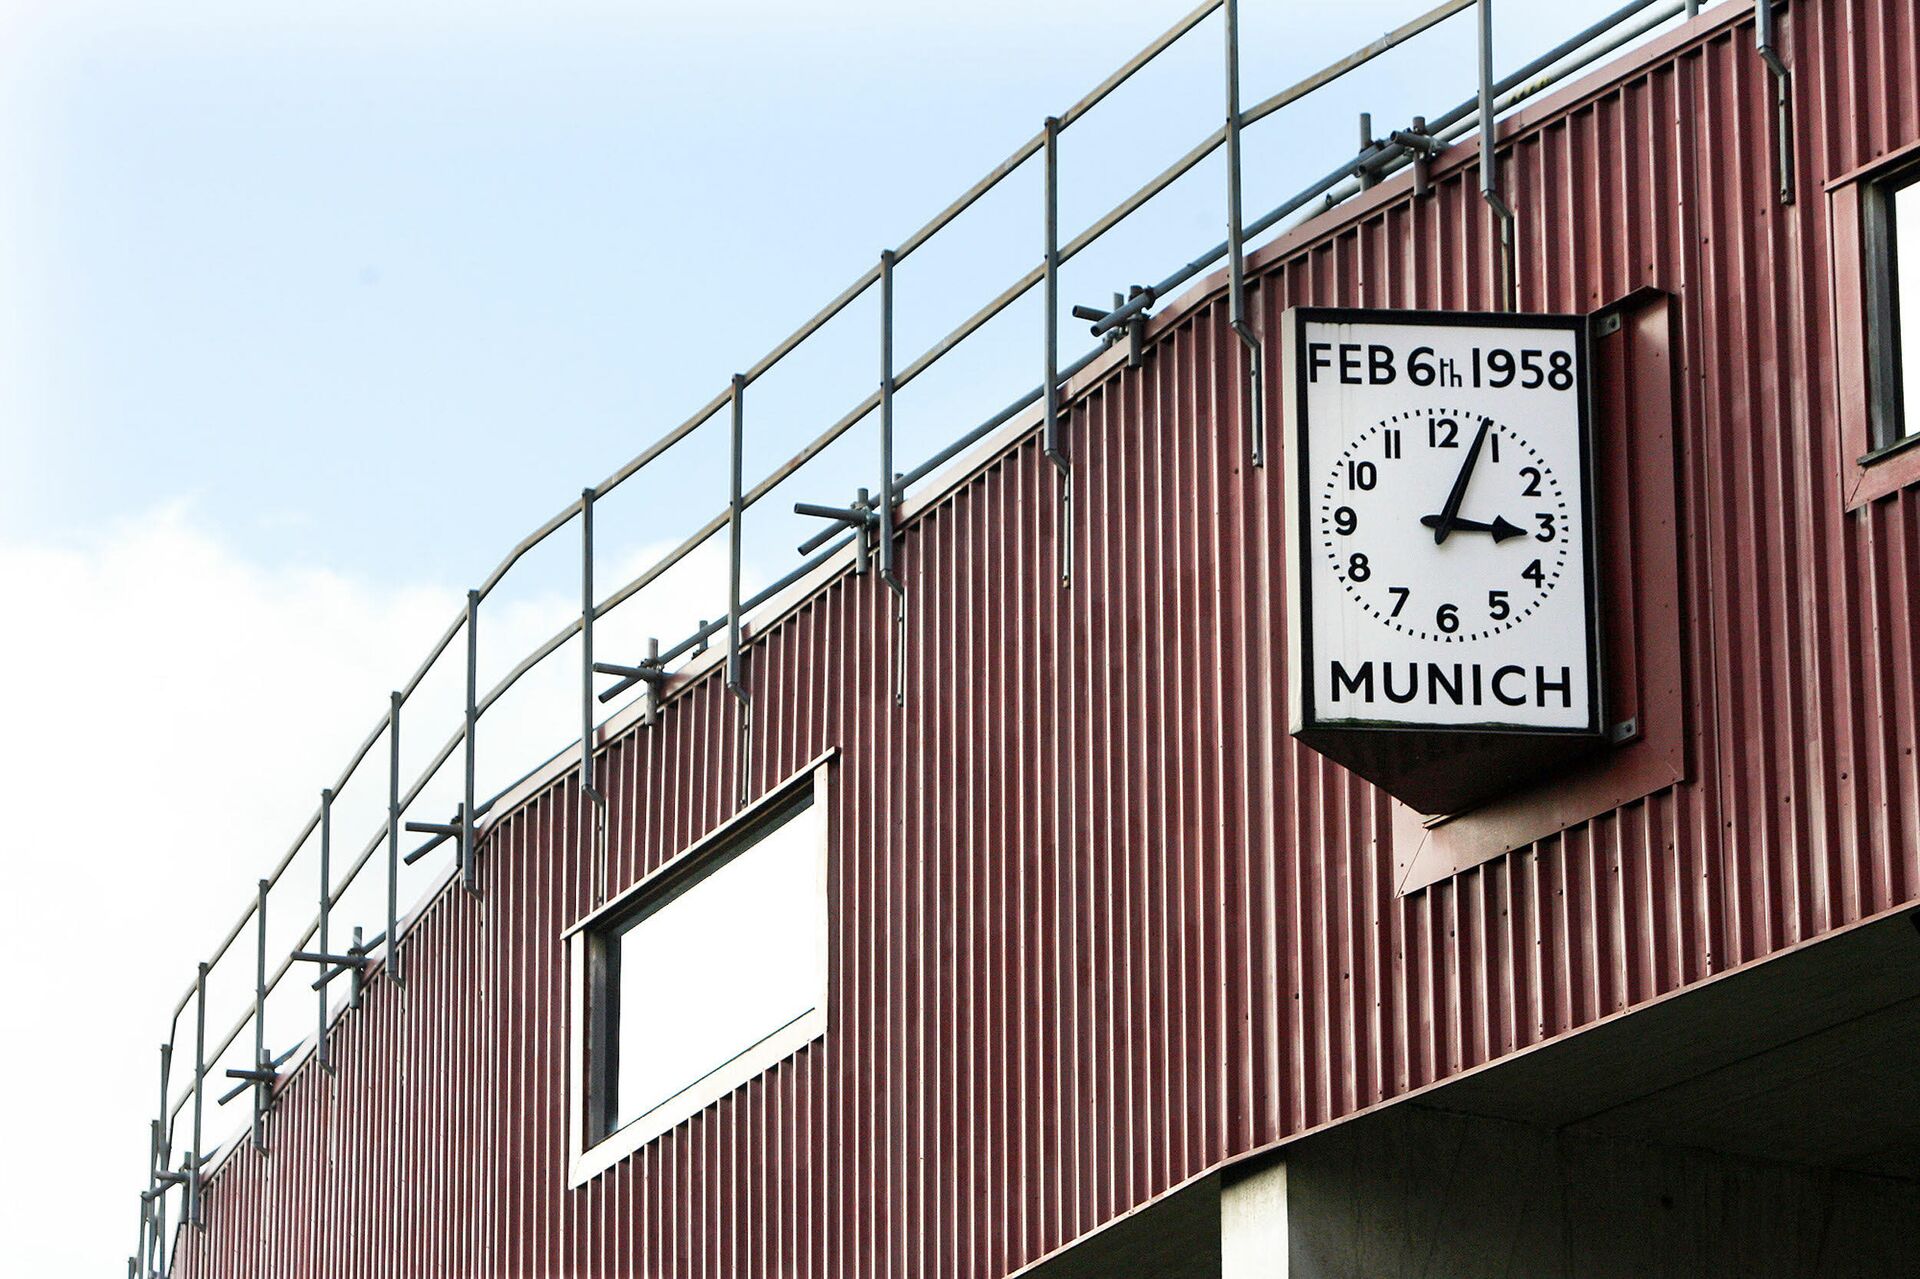 Часы с точным временем авиакатастрофы, в которой погибла част команды Манчестер Юнайтед - РИА Новости, 1920, 06.02.2020